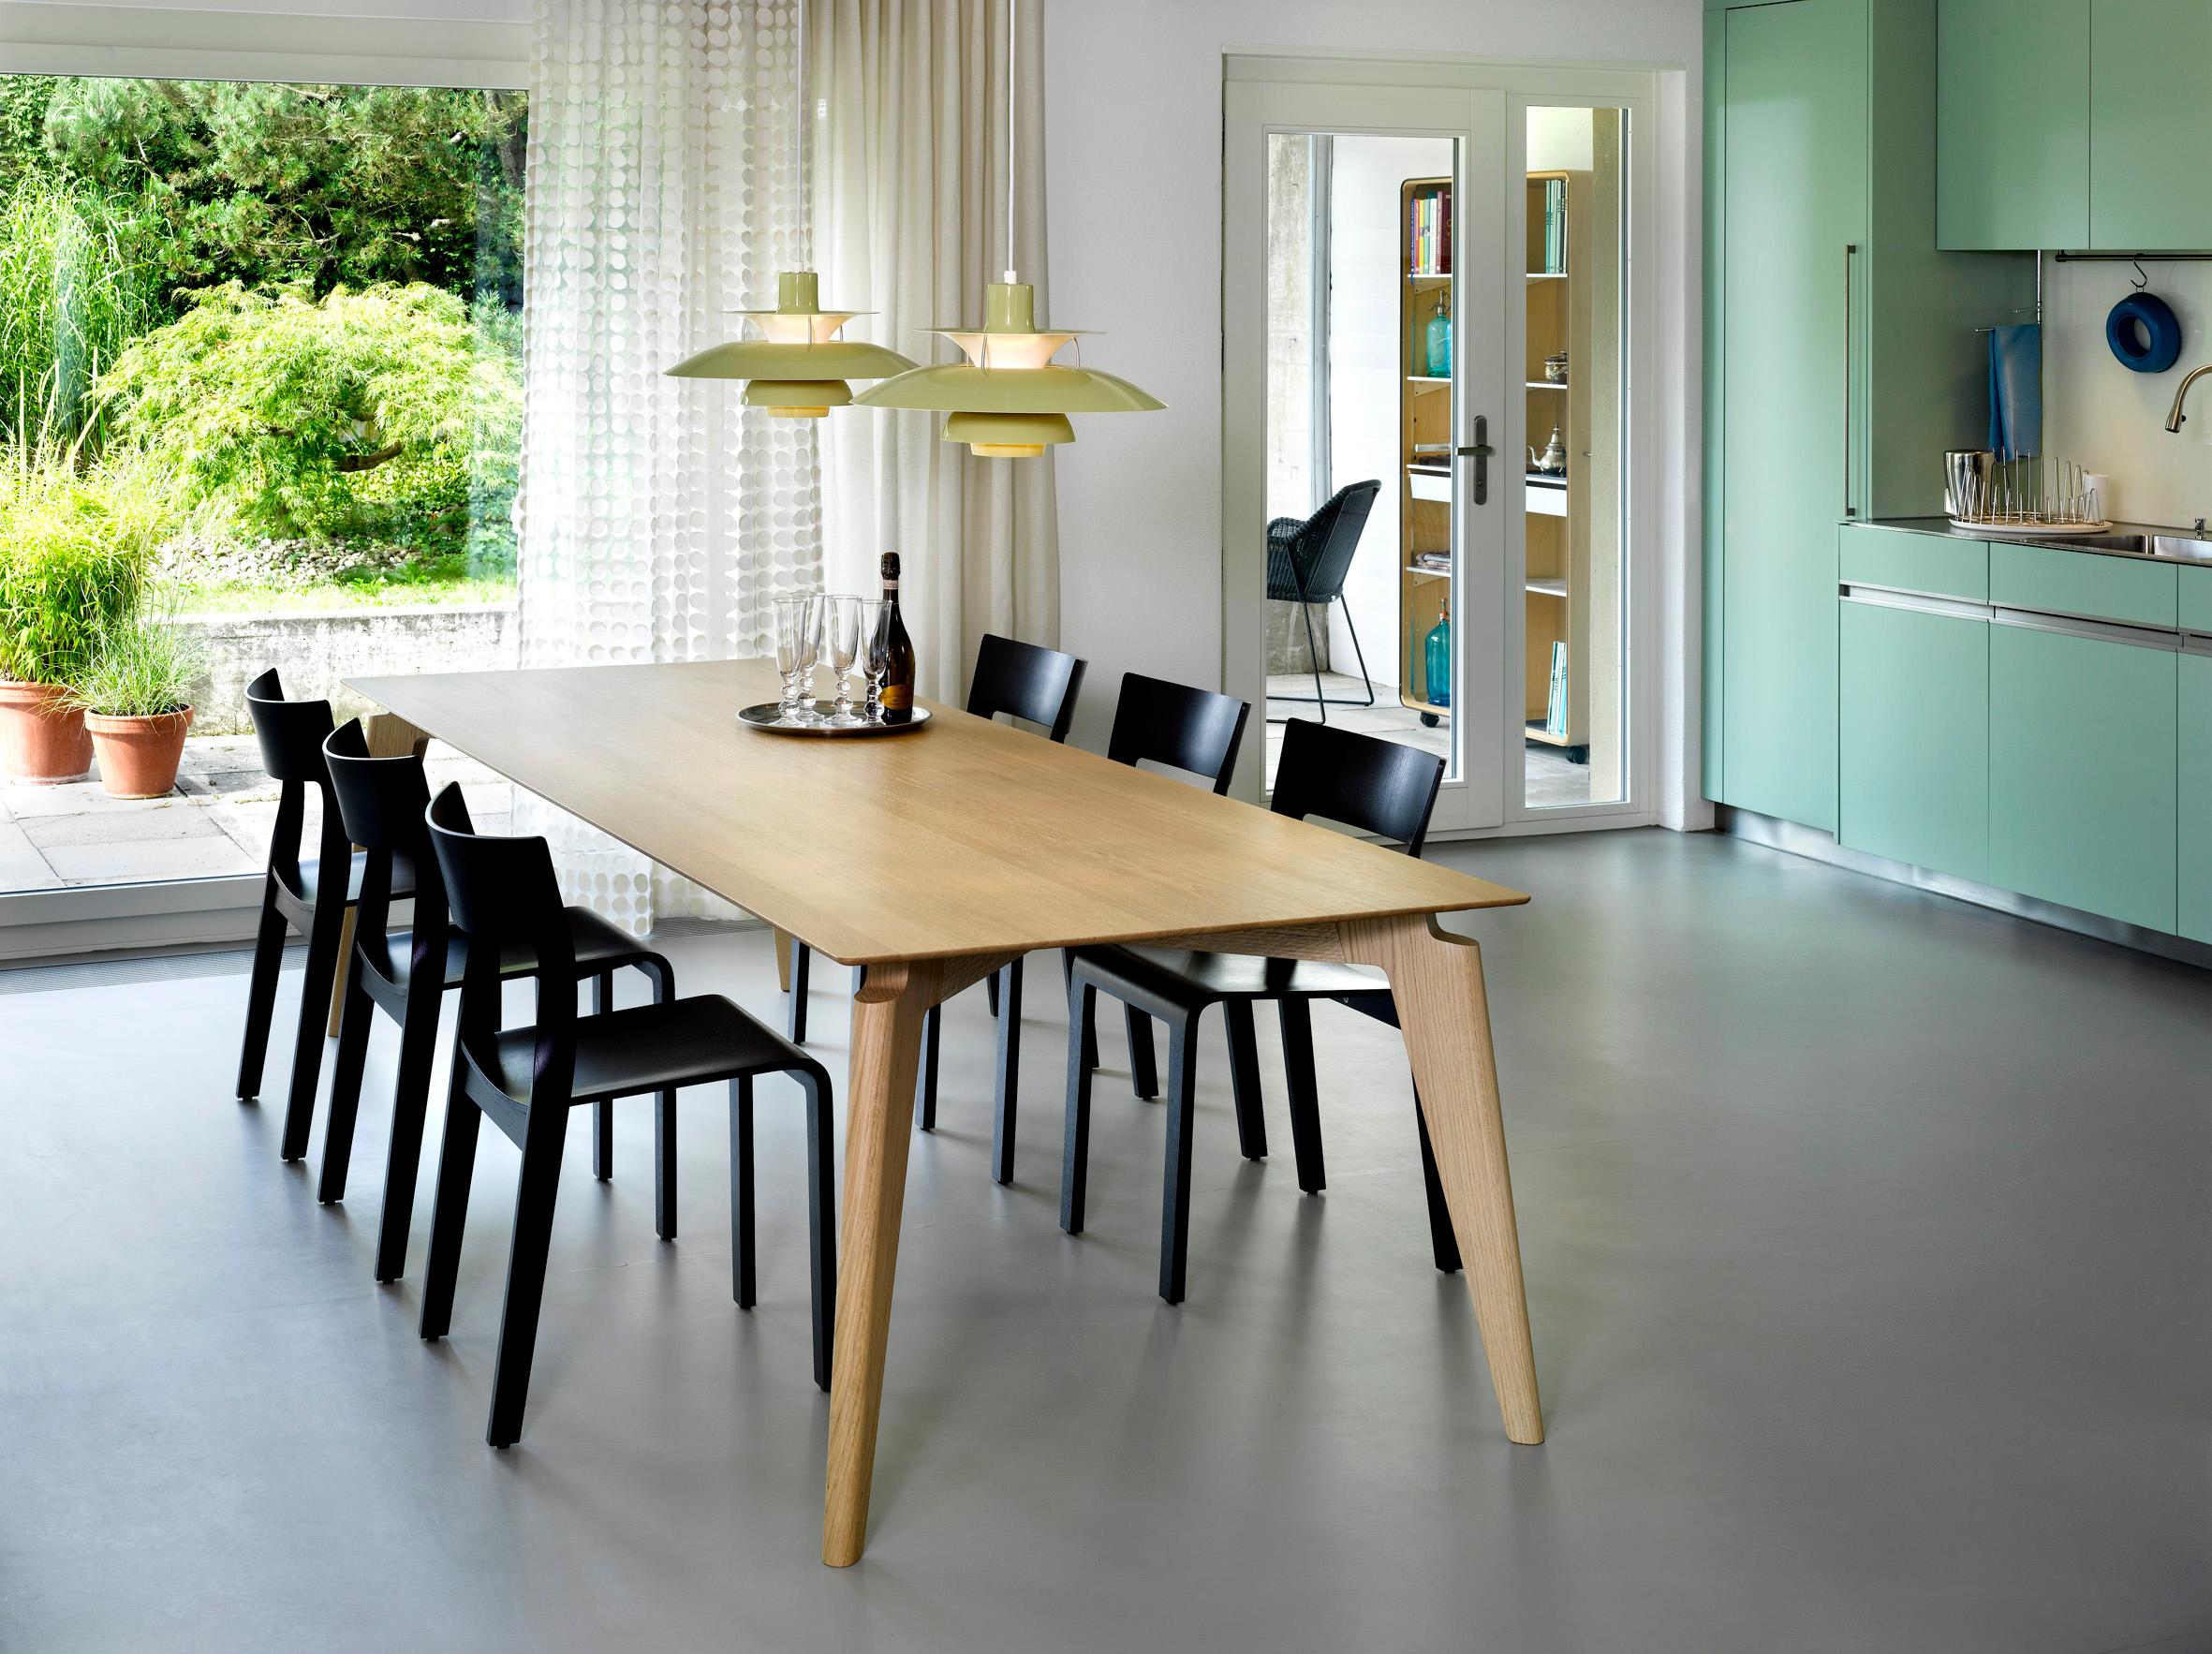 "Takushi"-Tisch und Hängeleuchten von Louis Poulsen im Esszimmer #esstisch #hängeleuchte ©Röthlisberger, Designer: Gavin Harris